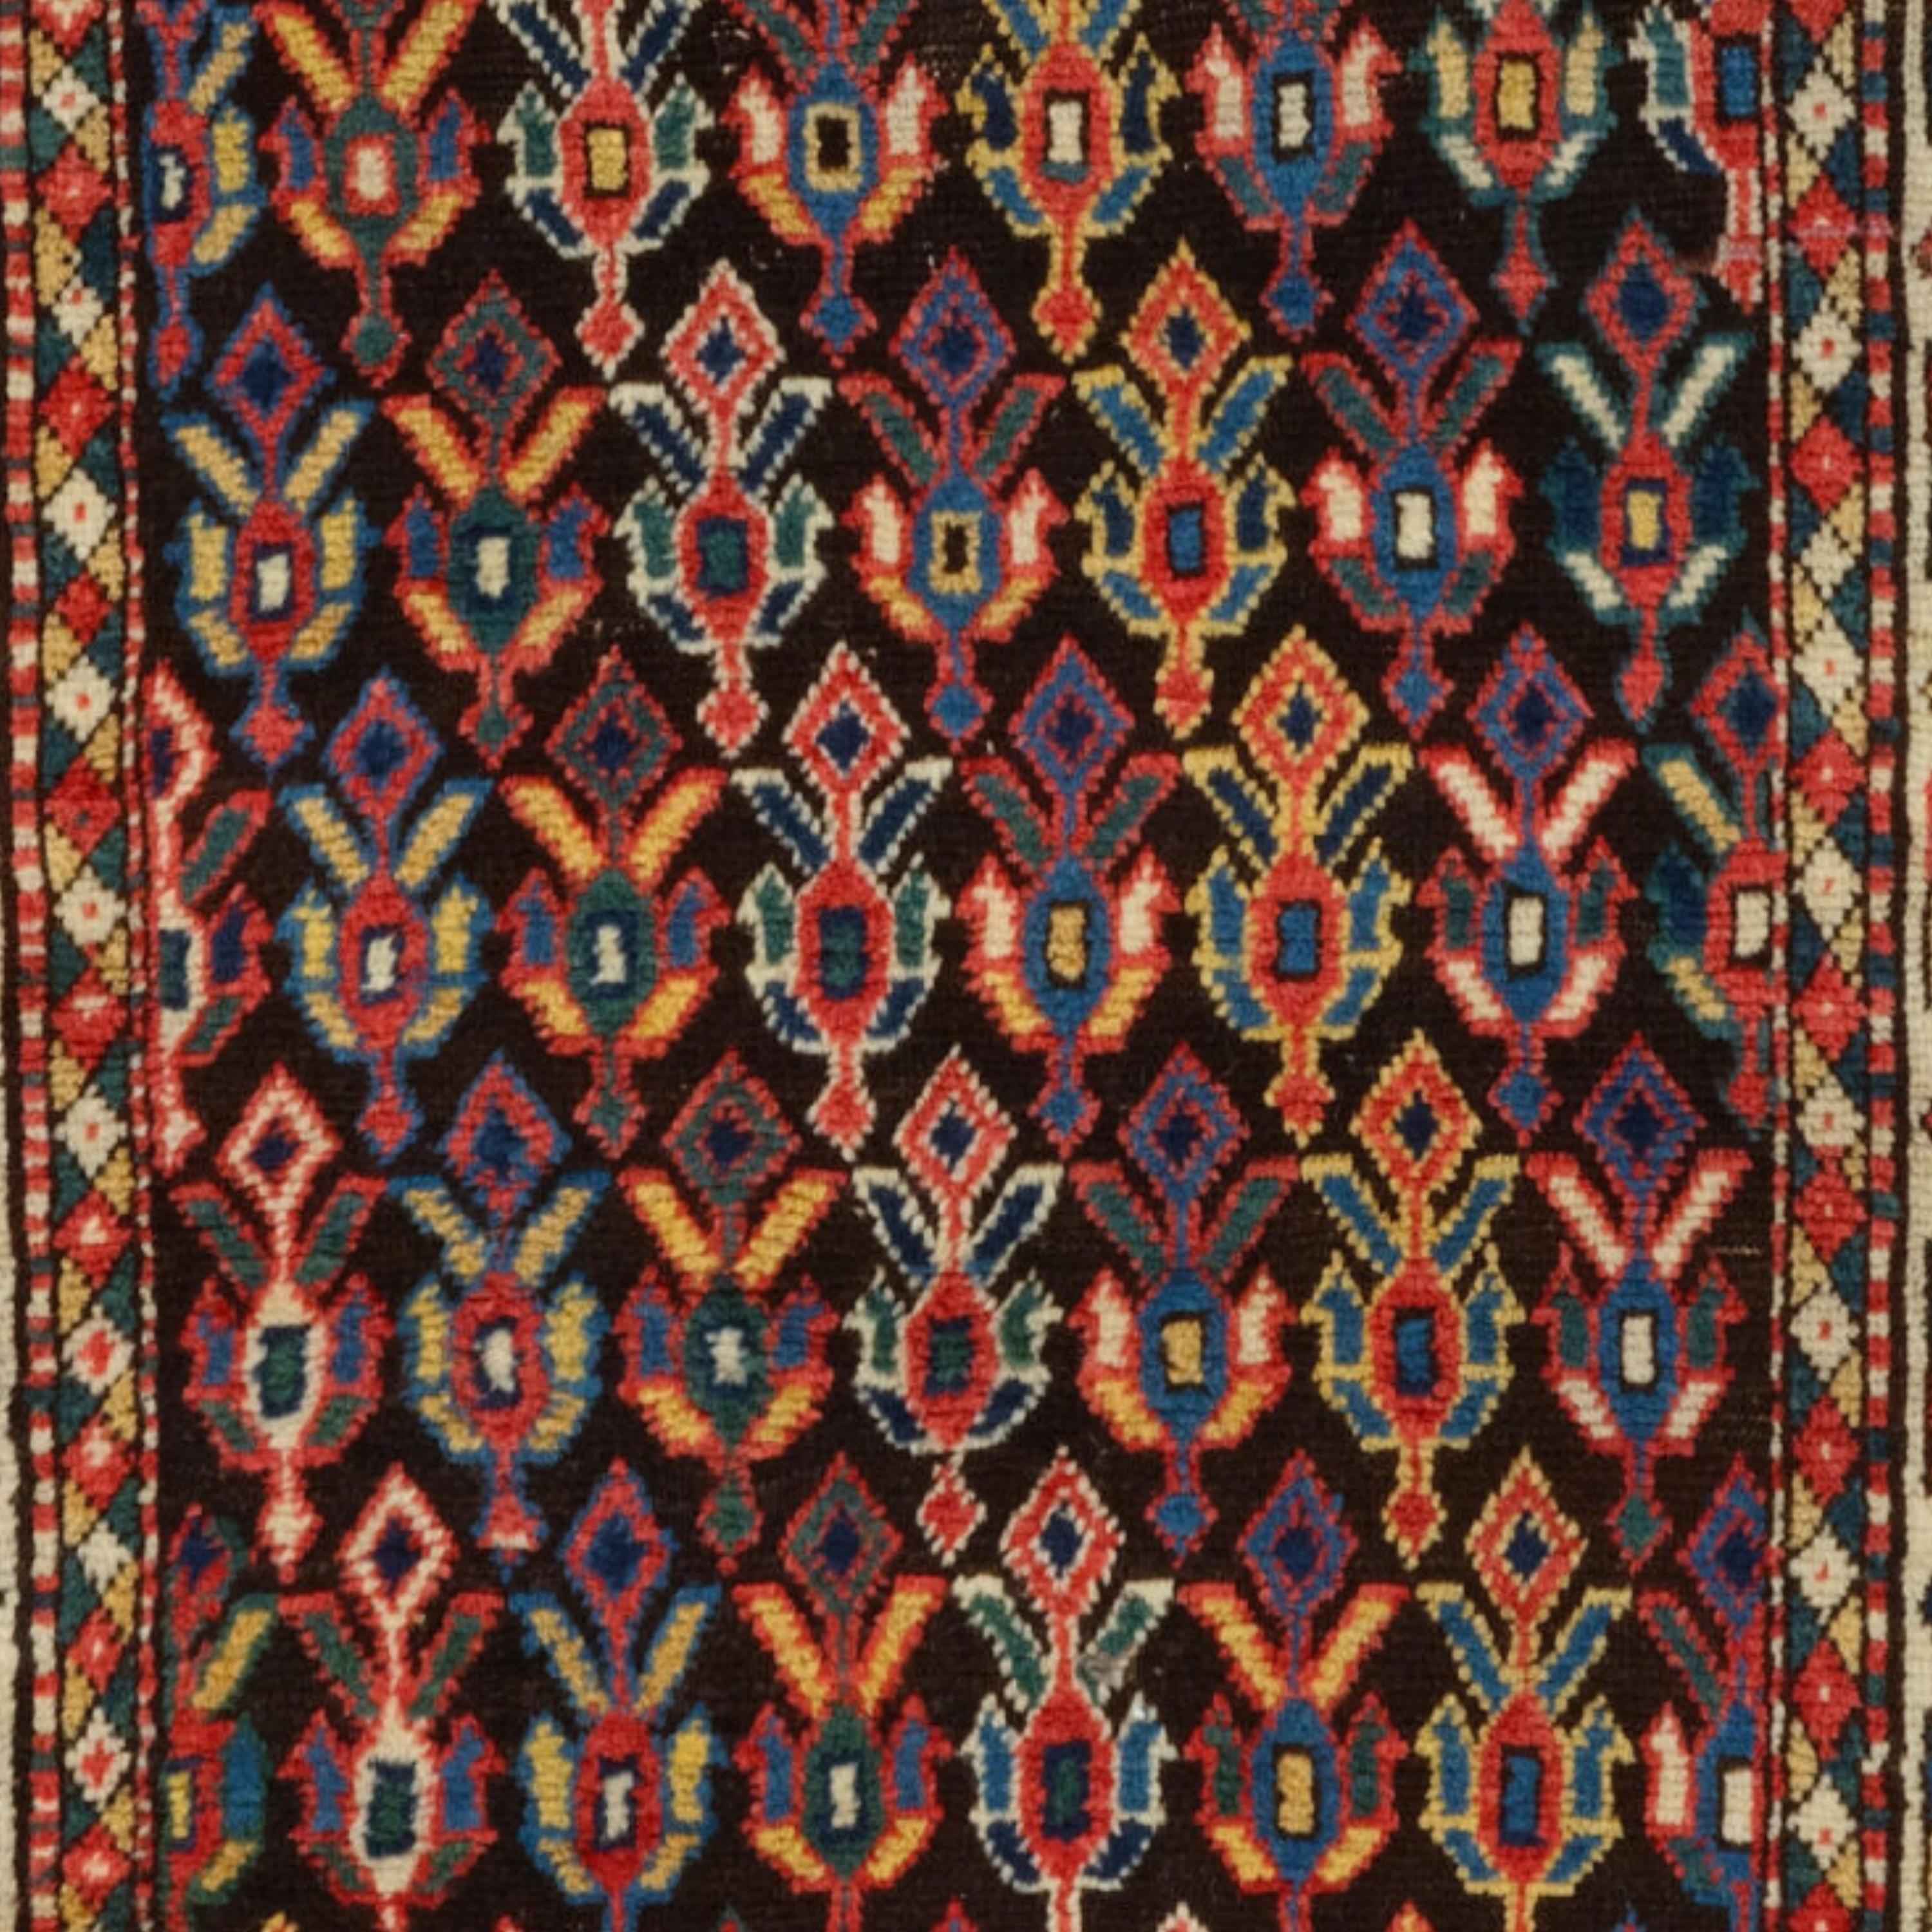 Antique Caucasian Rug - Late Of The 19th Century Caucasian Rug, Antique Rug In Good Condition For Sale In Sultanahmet, 34